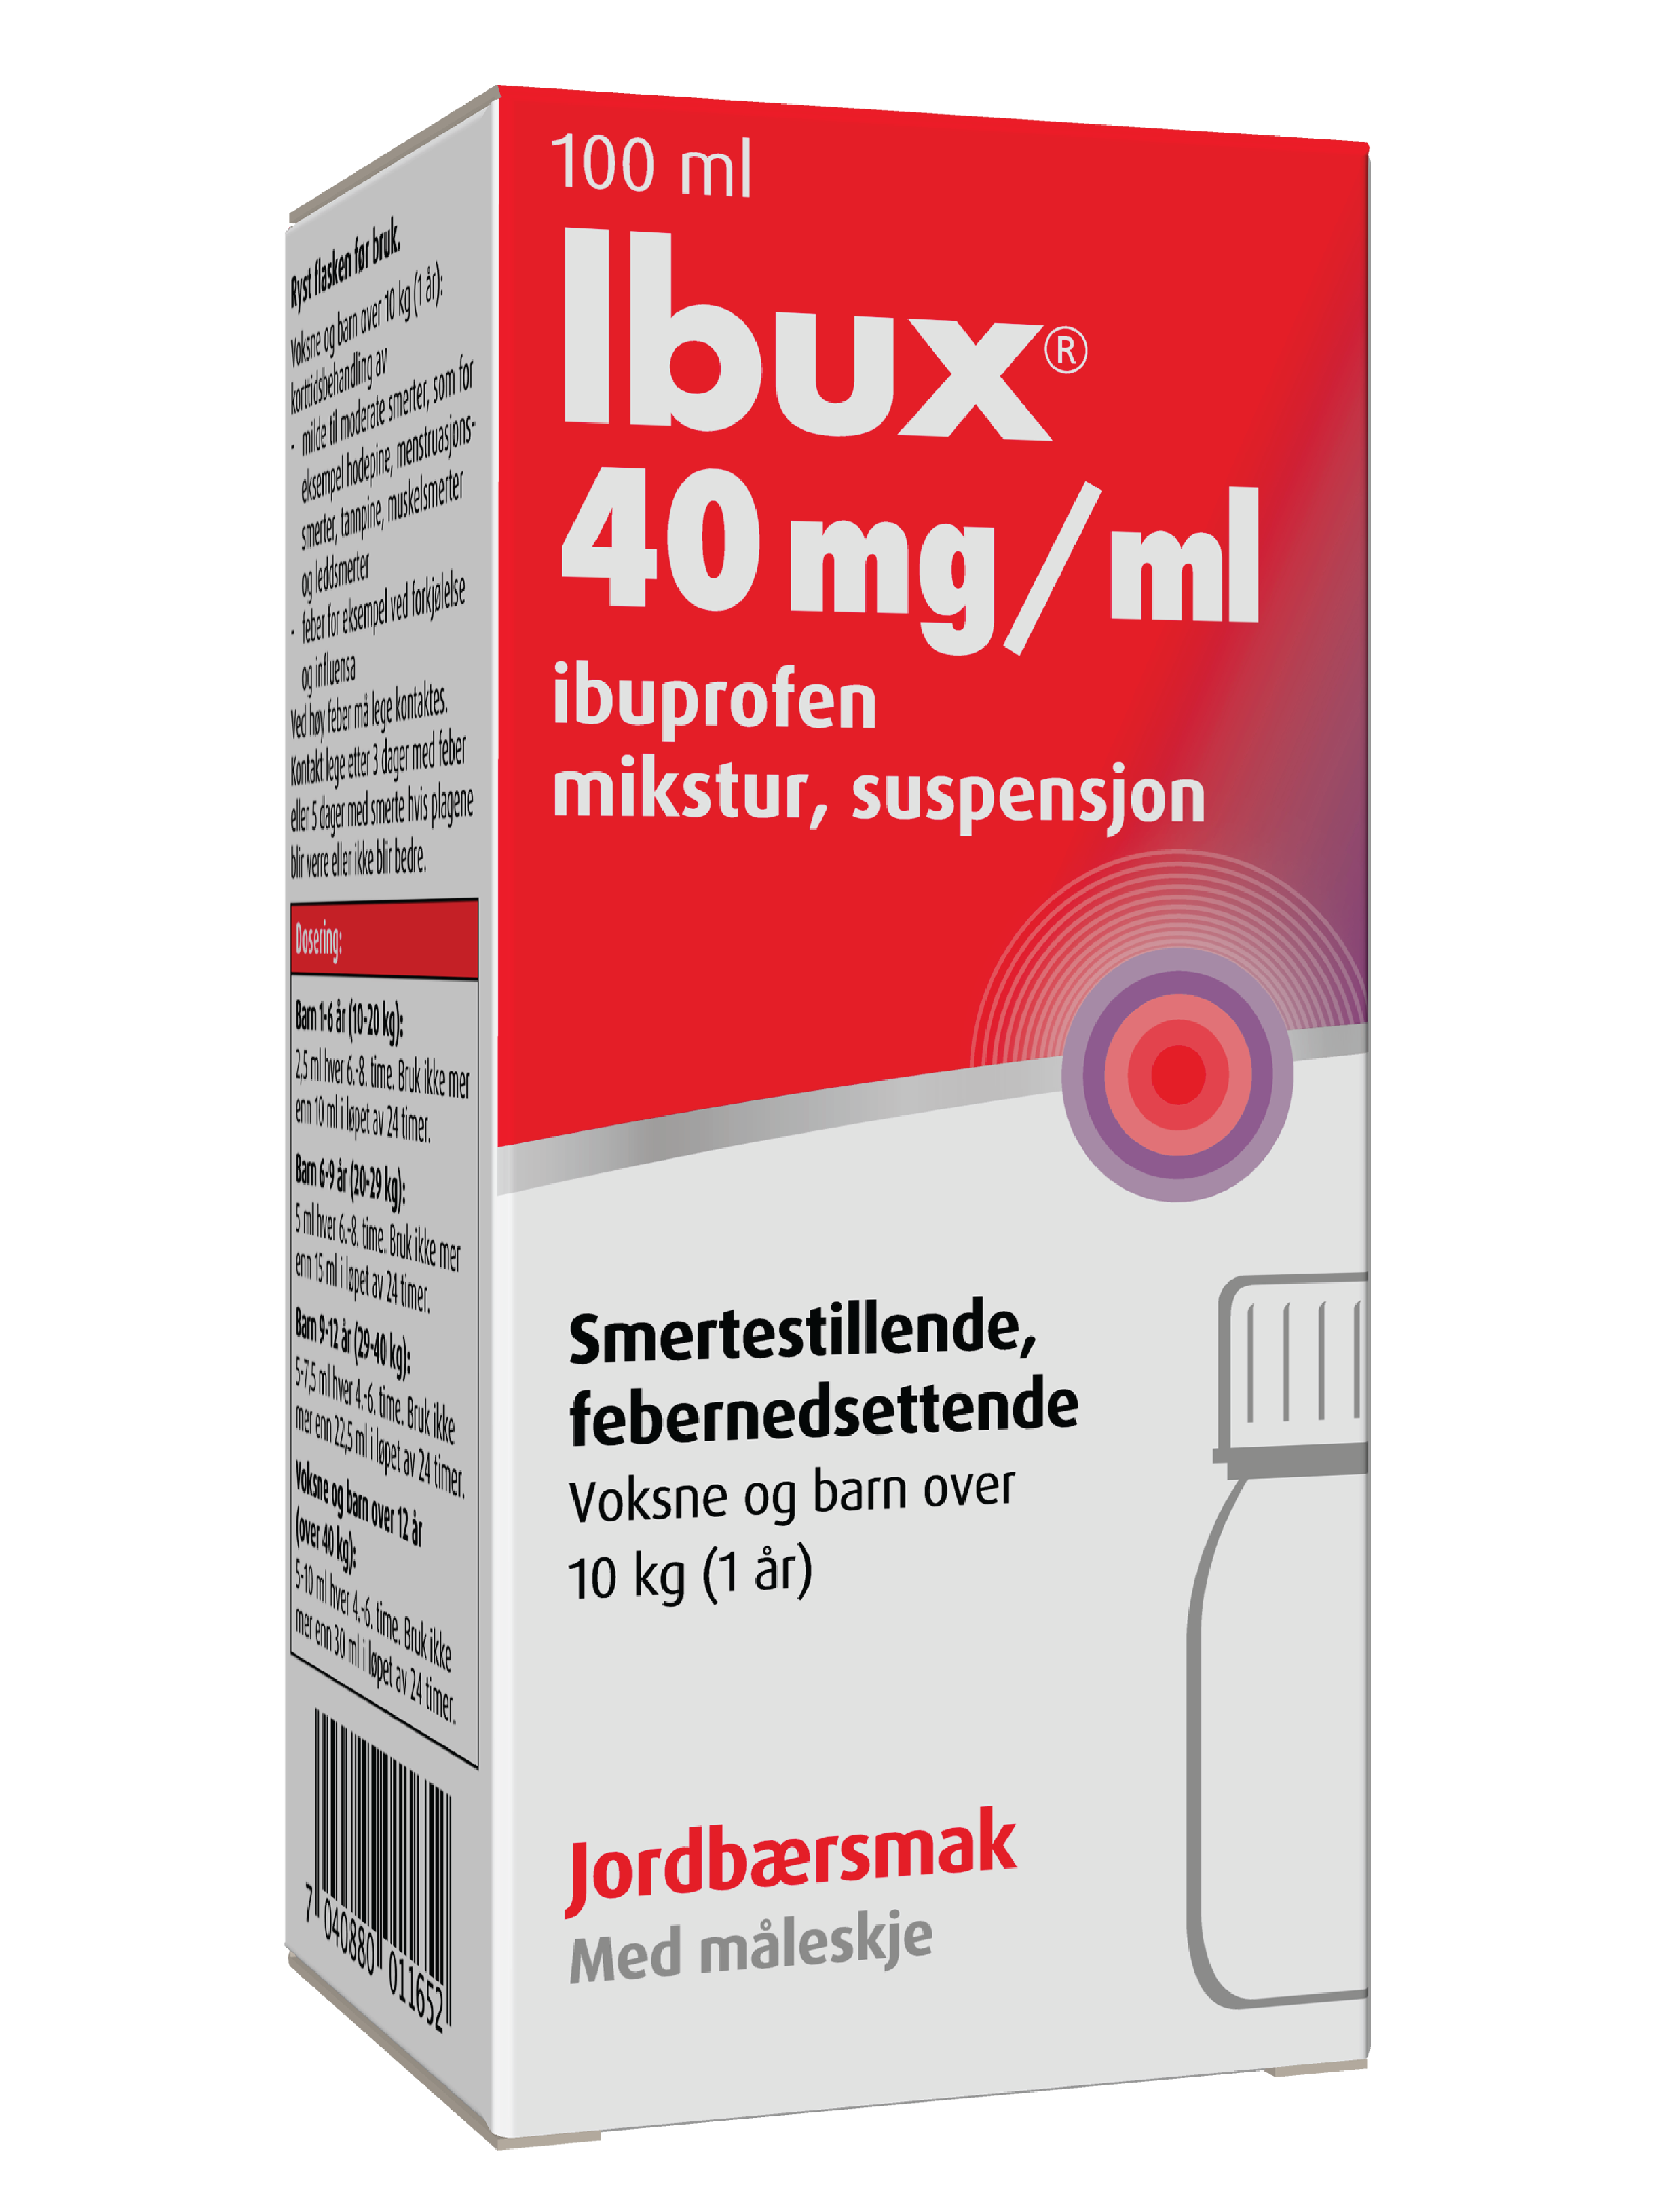 Ibux Mikstur 40mg/ml jordbær, 100 ml.